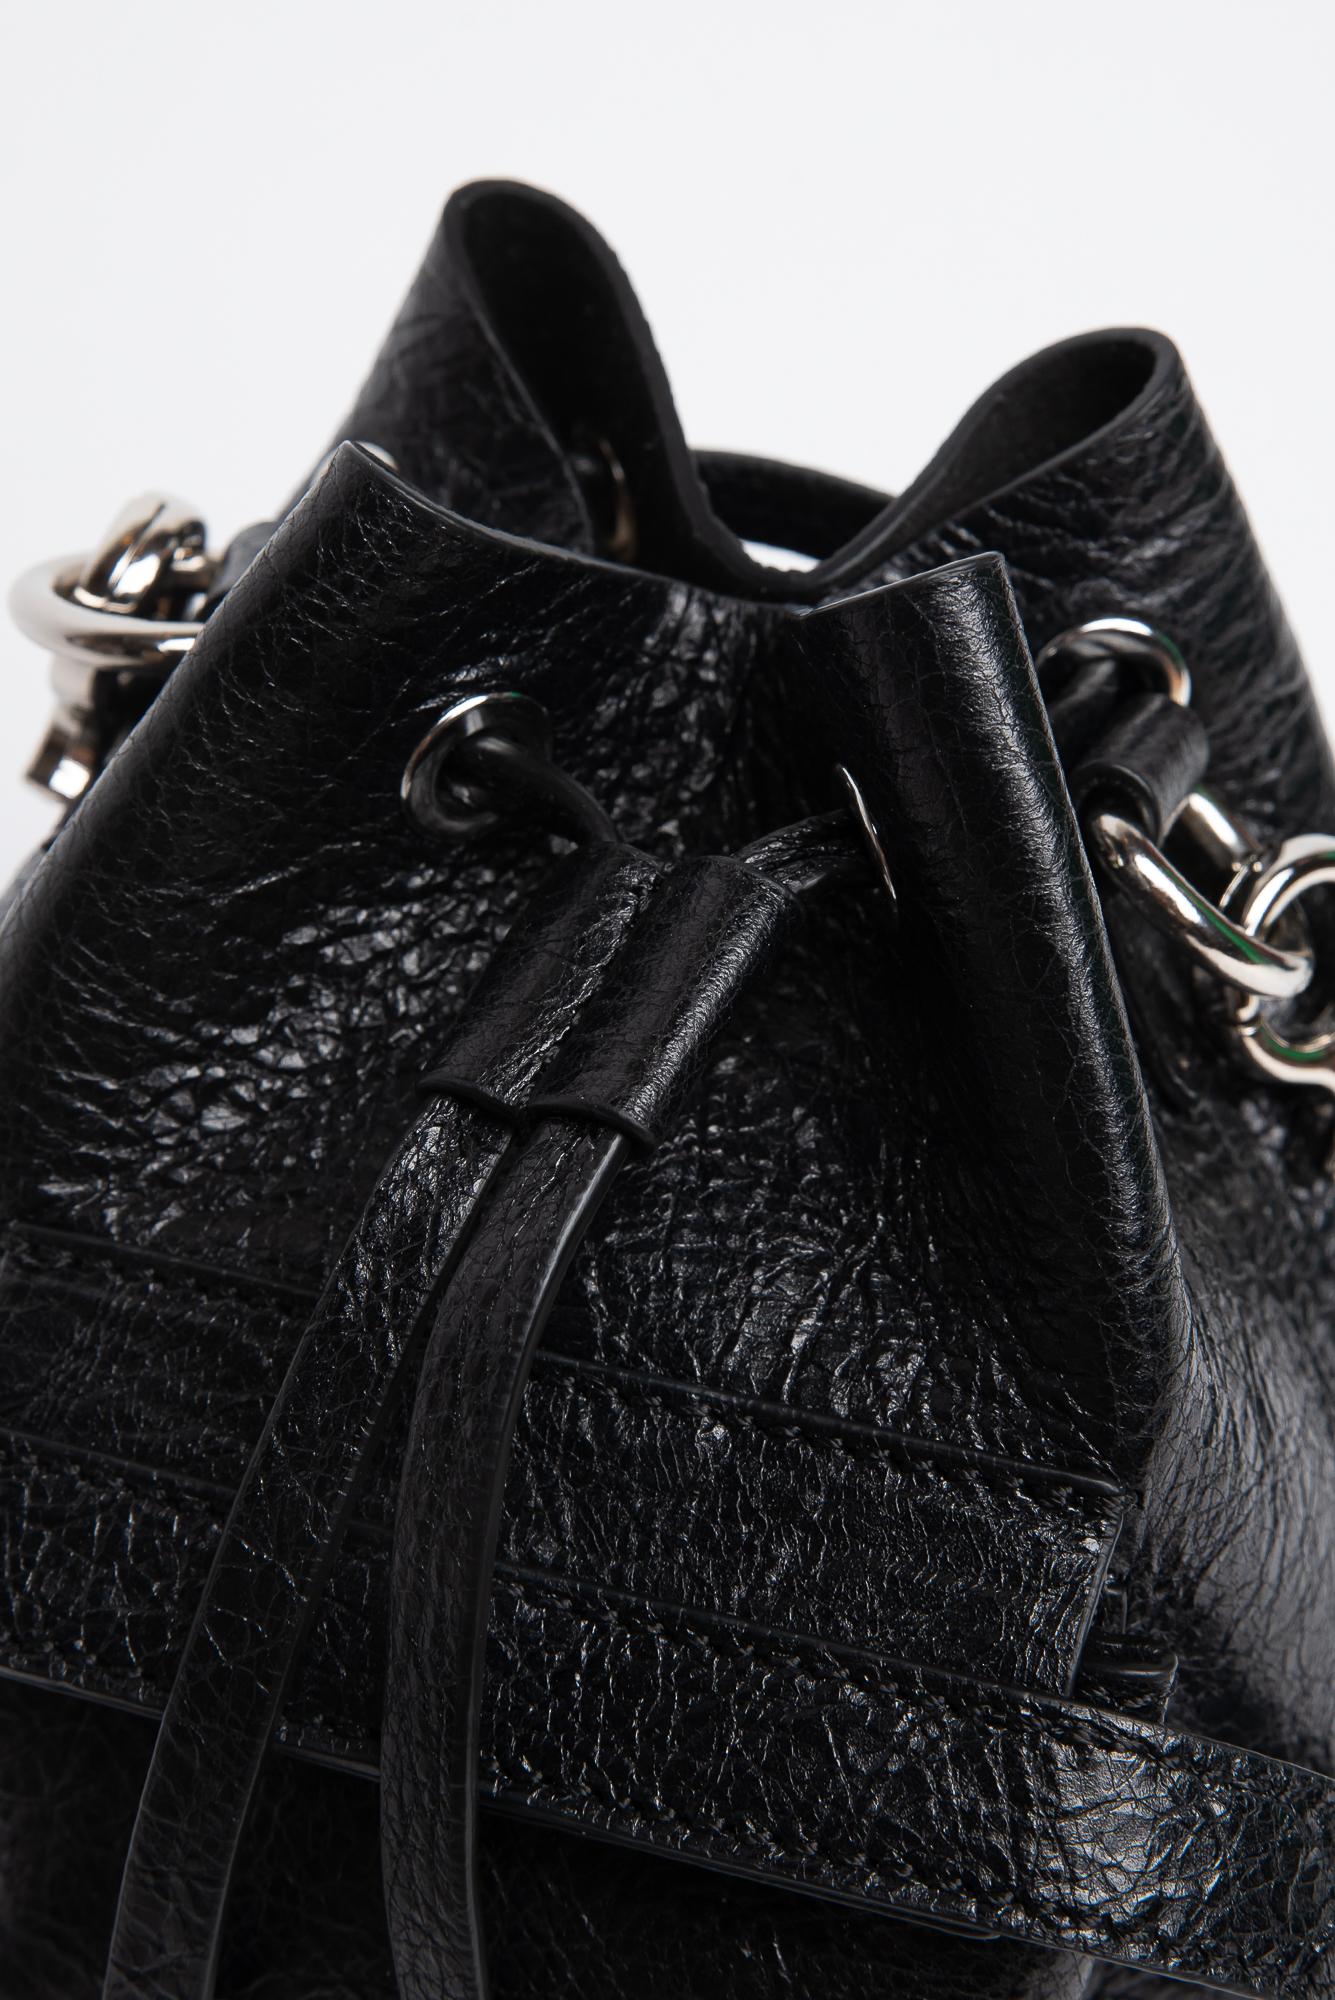 LEATHER BASKET BAG, Black leather vintage effect